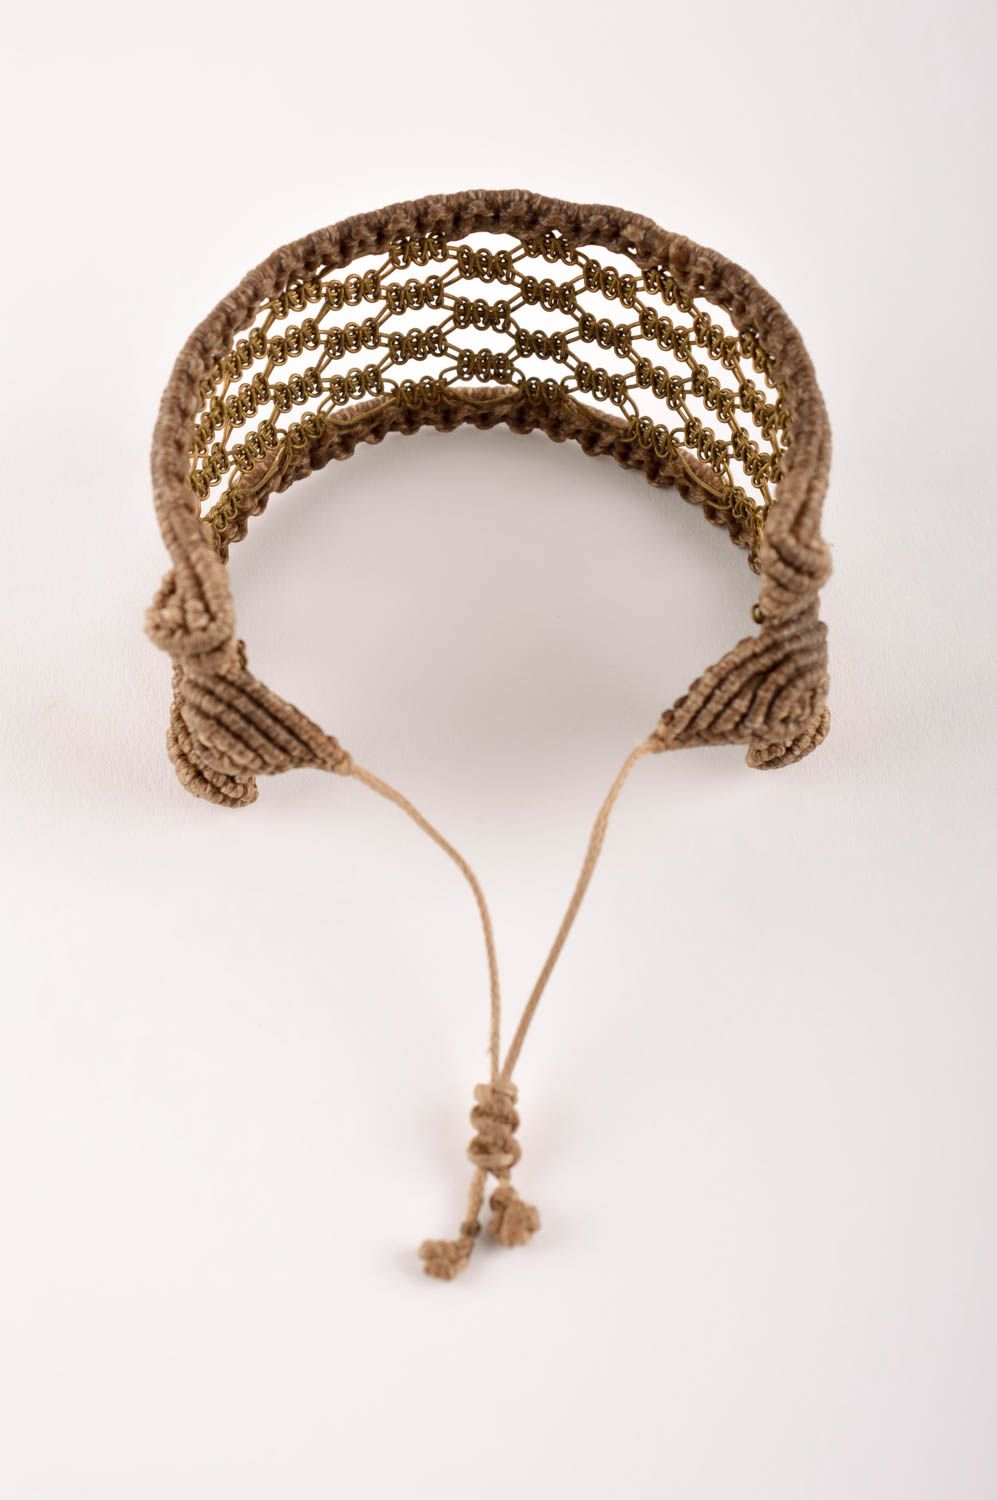 Модный браслет ручной работы плетеный браслет бежевый ажурный браслет из латуни фото 4